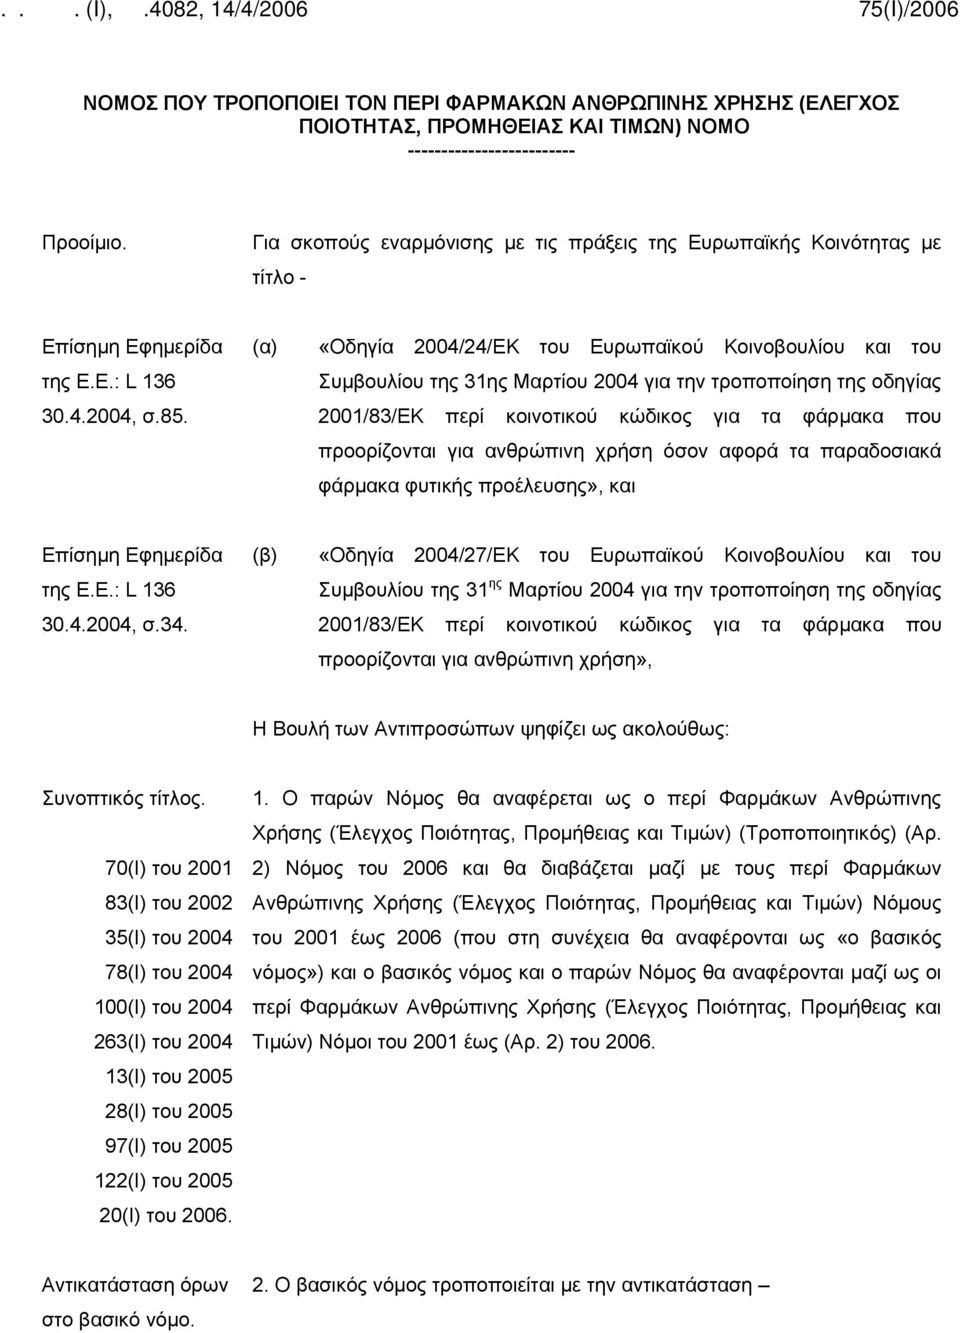 (α) «Οδηγία 2004/24/ΕΚ του Ευρωπαϊκού Κοινοβουλίου και του Συμβουλίου της 31ης Μαρτίου 2004 για την τροποποίηση της οδηγίας 2001/83/ΕΚ περί κοινοτικού κώδικος για τα φάρμακα που προορίζονται για